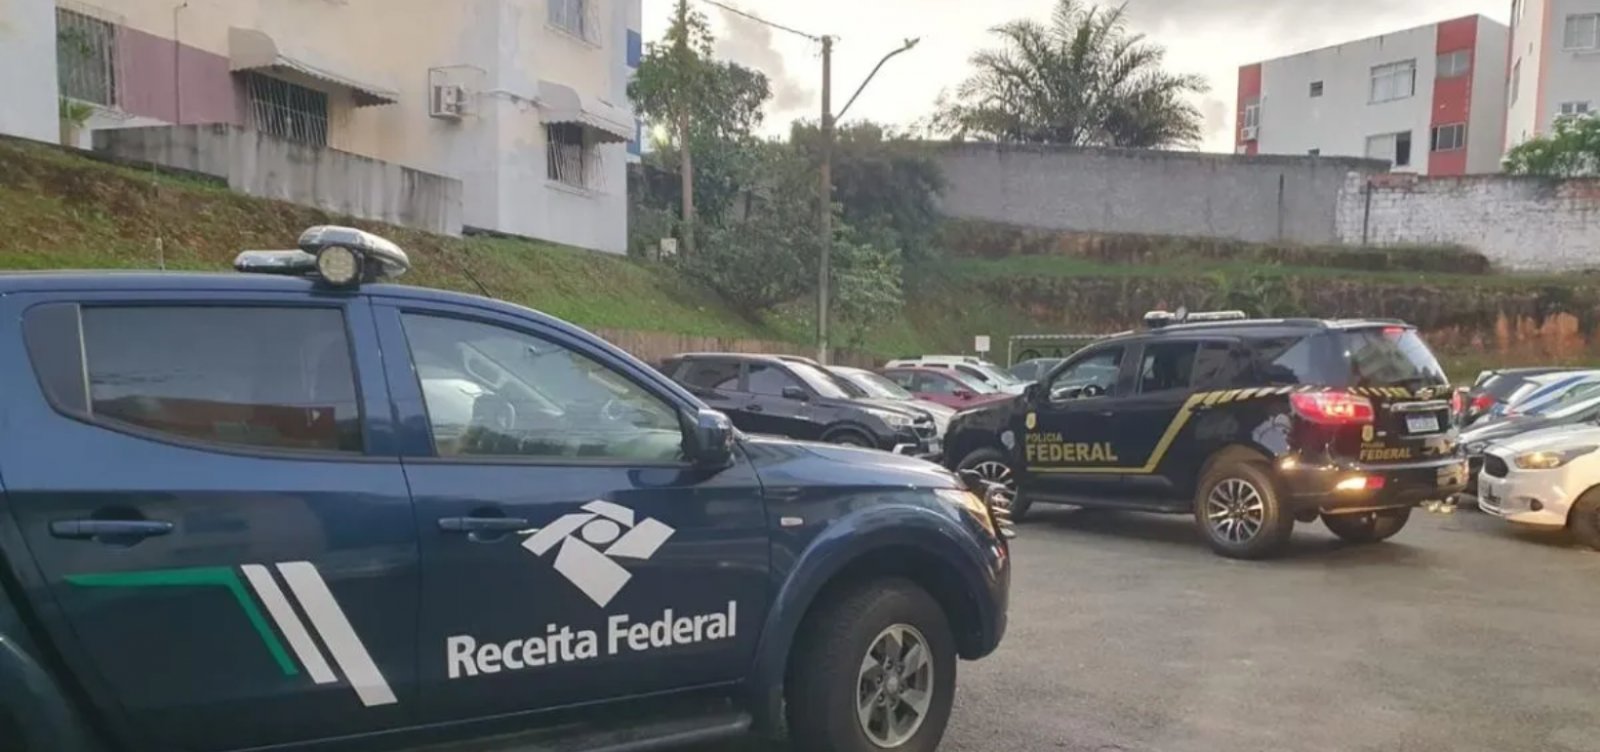 Polícia Federal cumpre mandados em operação que investiga fraude de R$ 4 milhões no Imposto de Renda